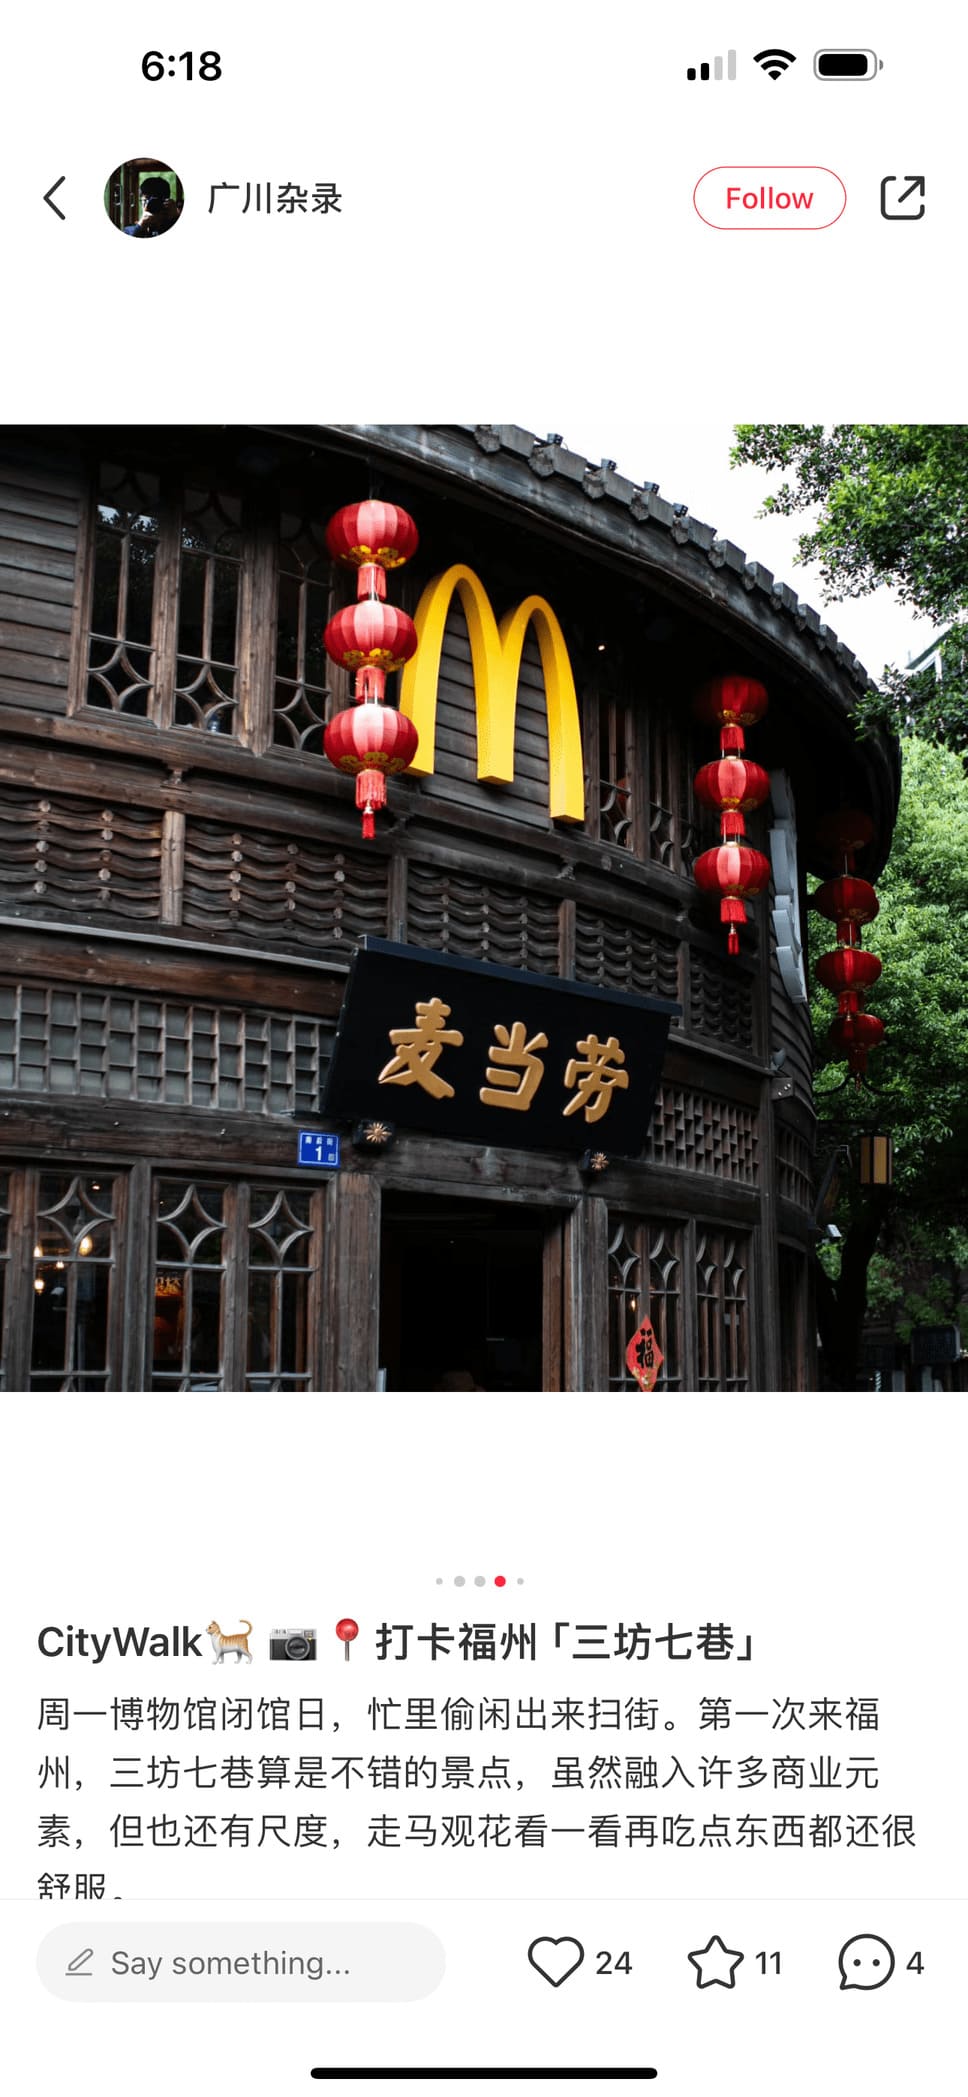 6D5N Fujian Wonders: Fuzhou, Pingtan, Quanzhou, Xiamen & Tulou Adventure